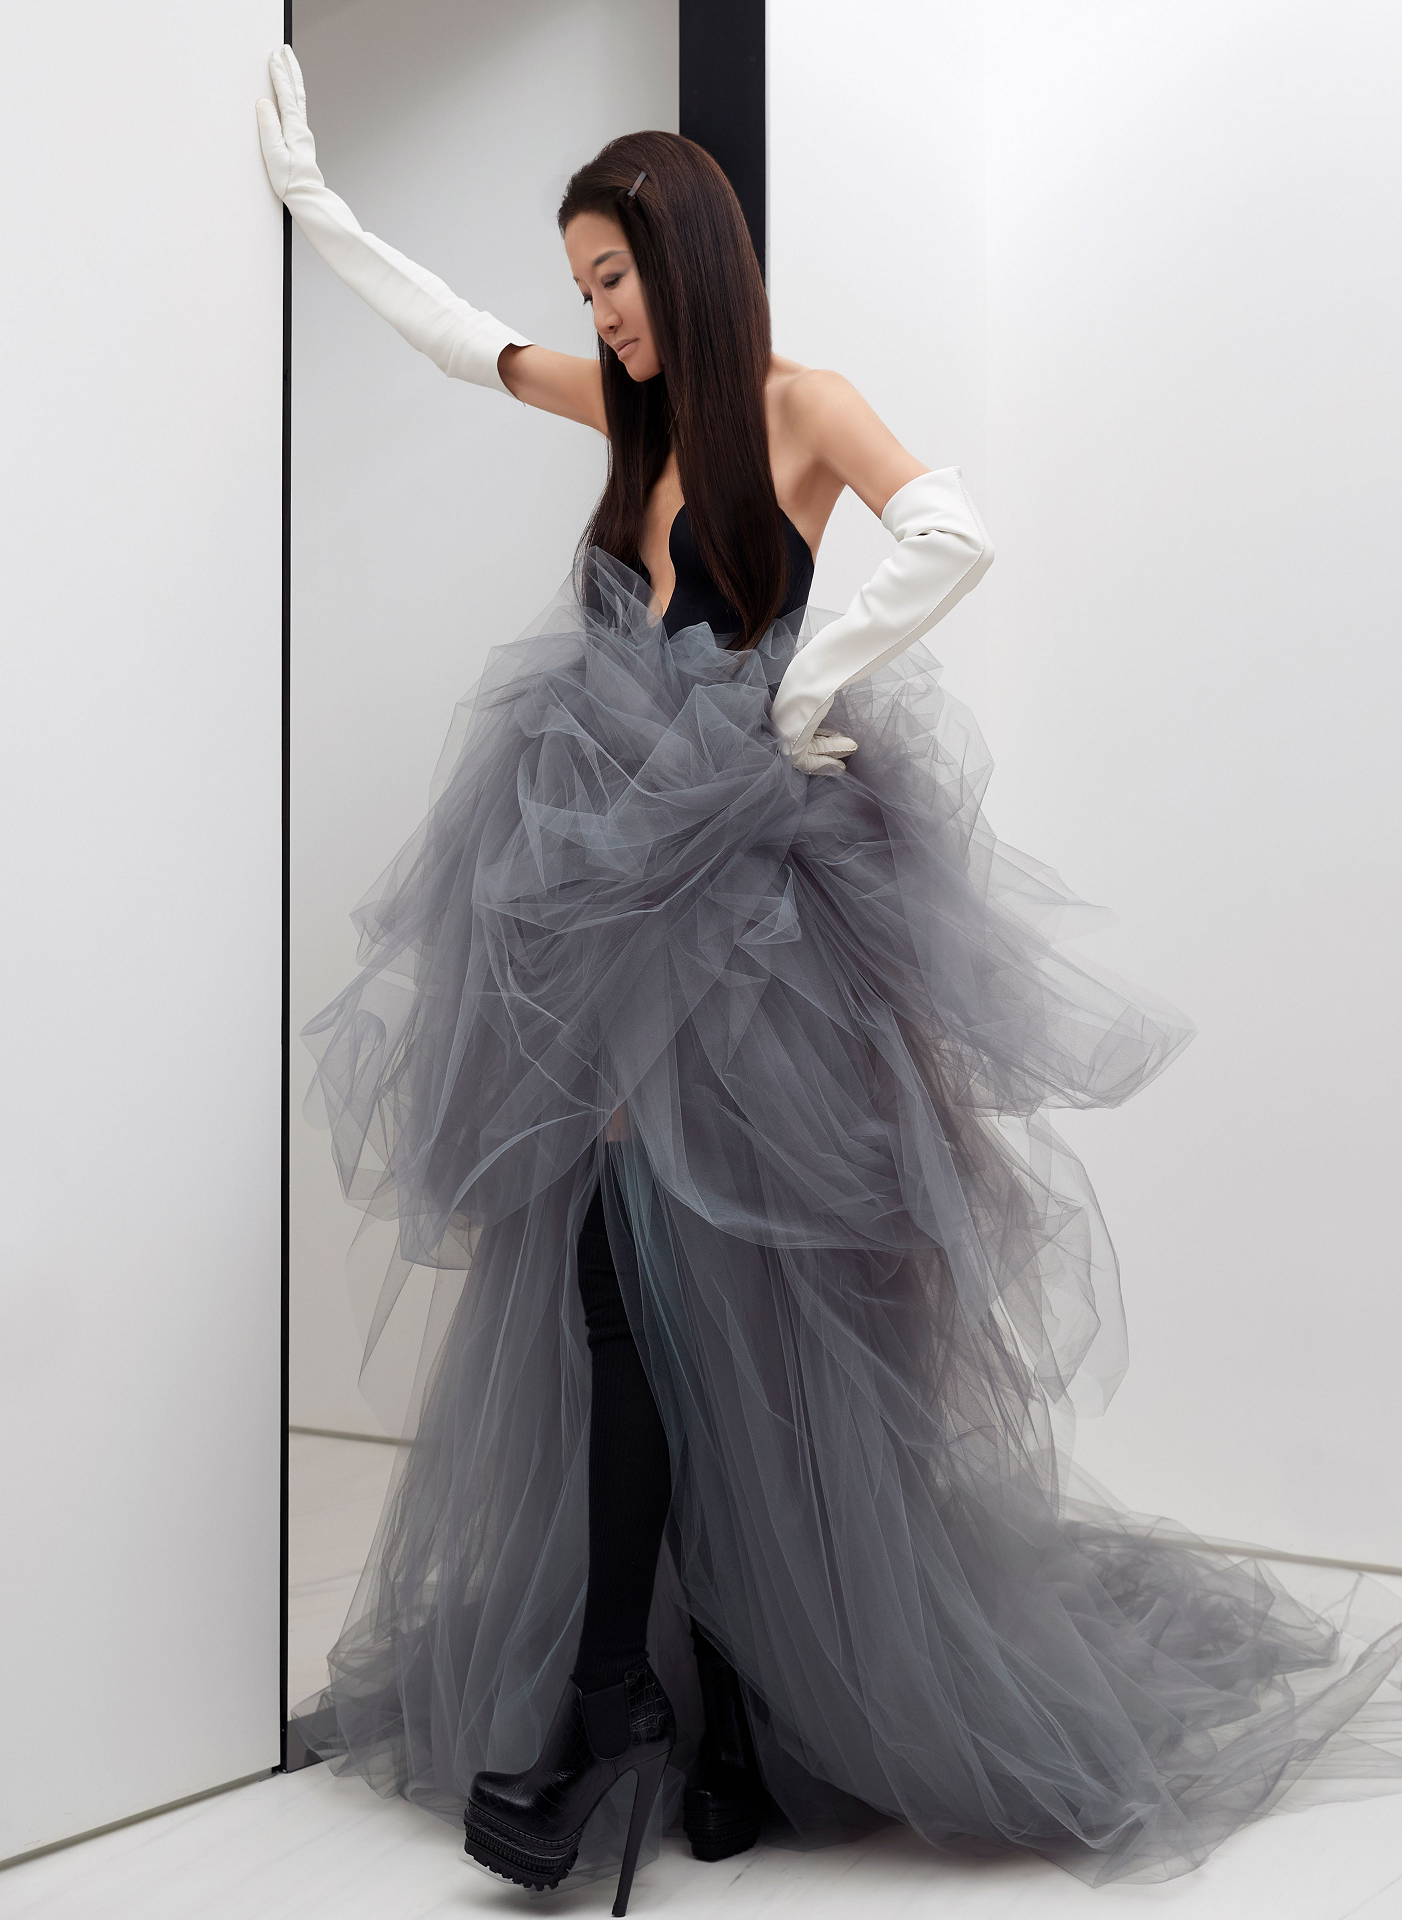 消除婚纱与成衣的界限,Vera Wang预演全新时装系列。